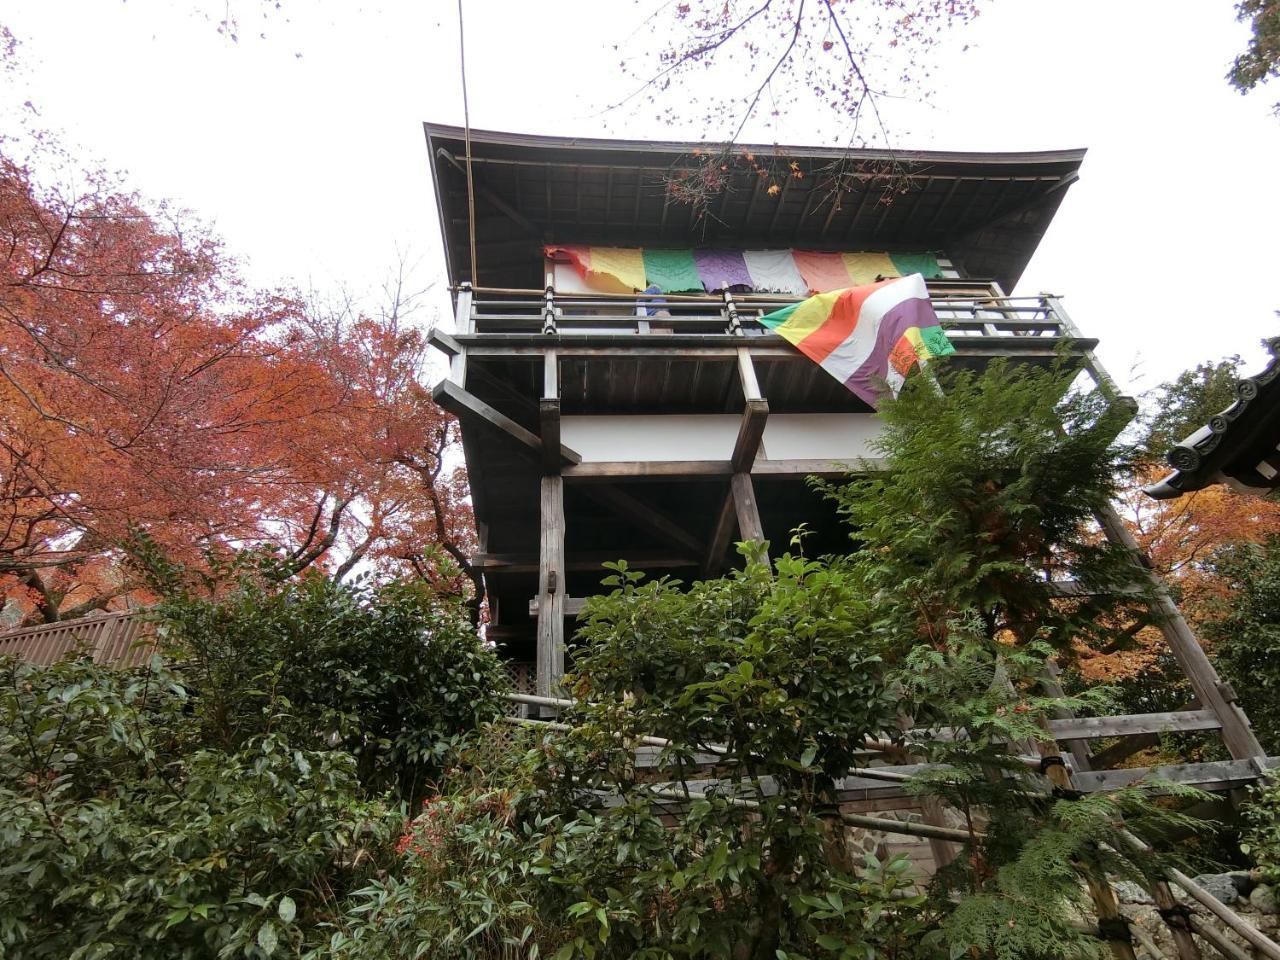 Kawasemi An Villa Kyoto Exterior photo